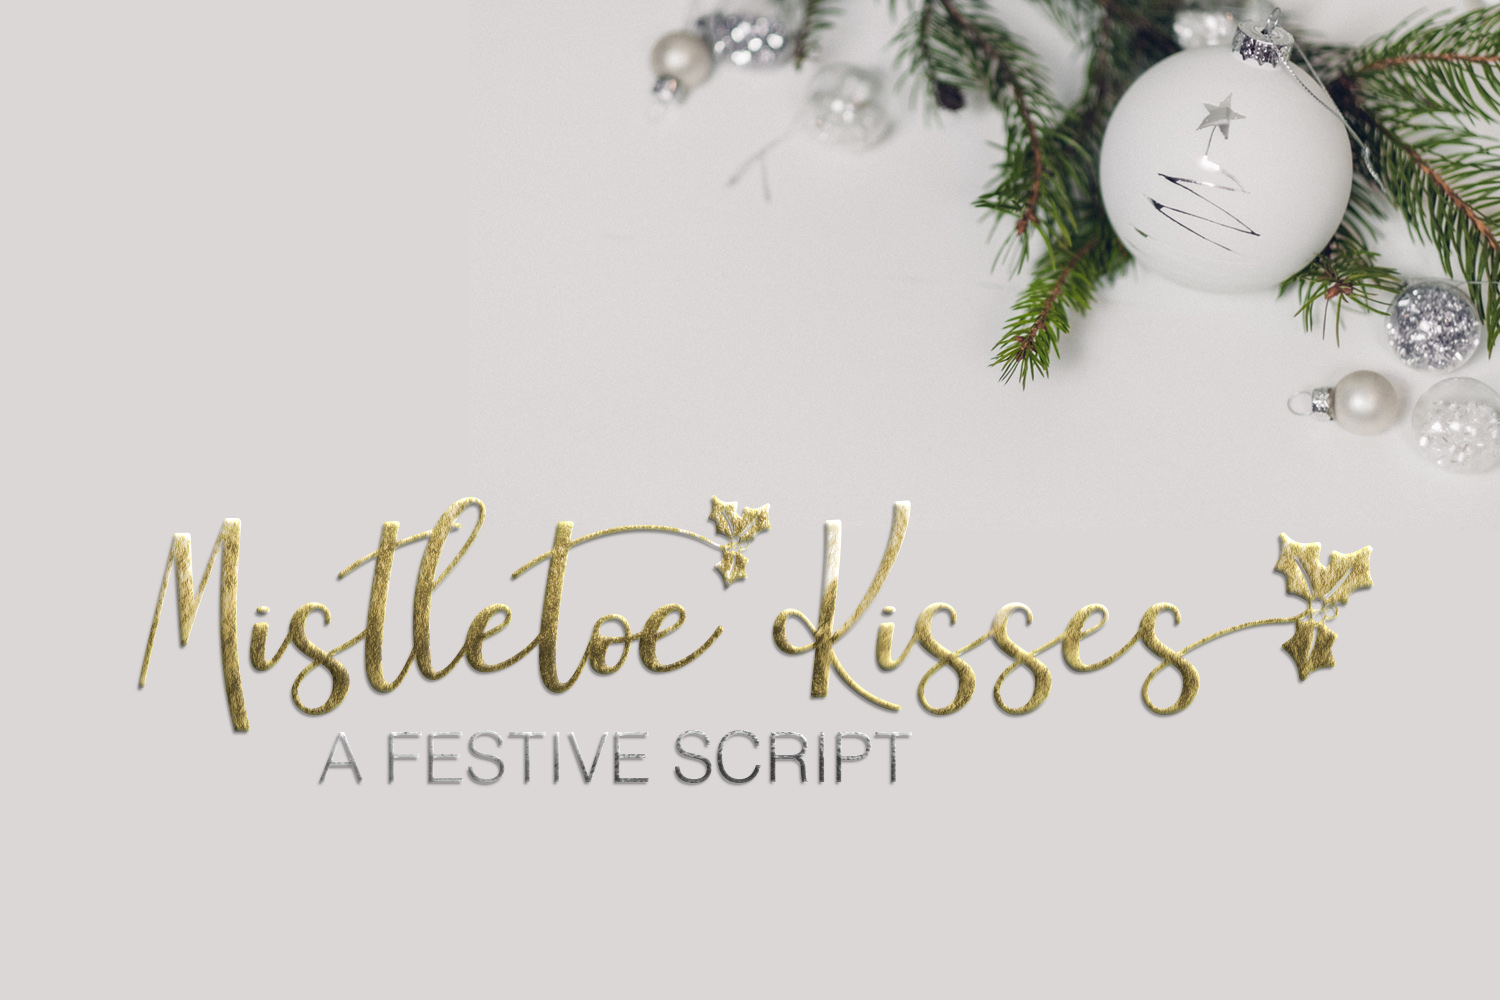 Mistletoe Kisses by kristyhatswell